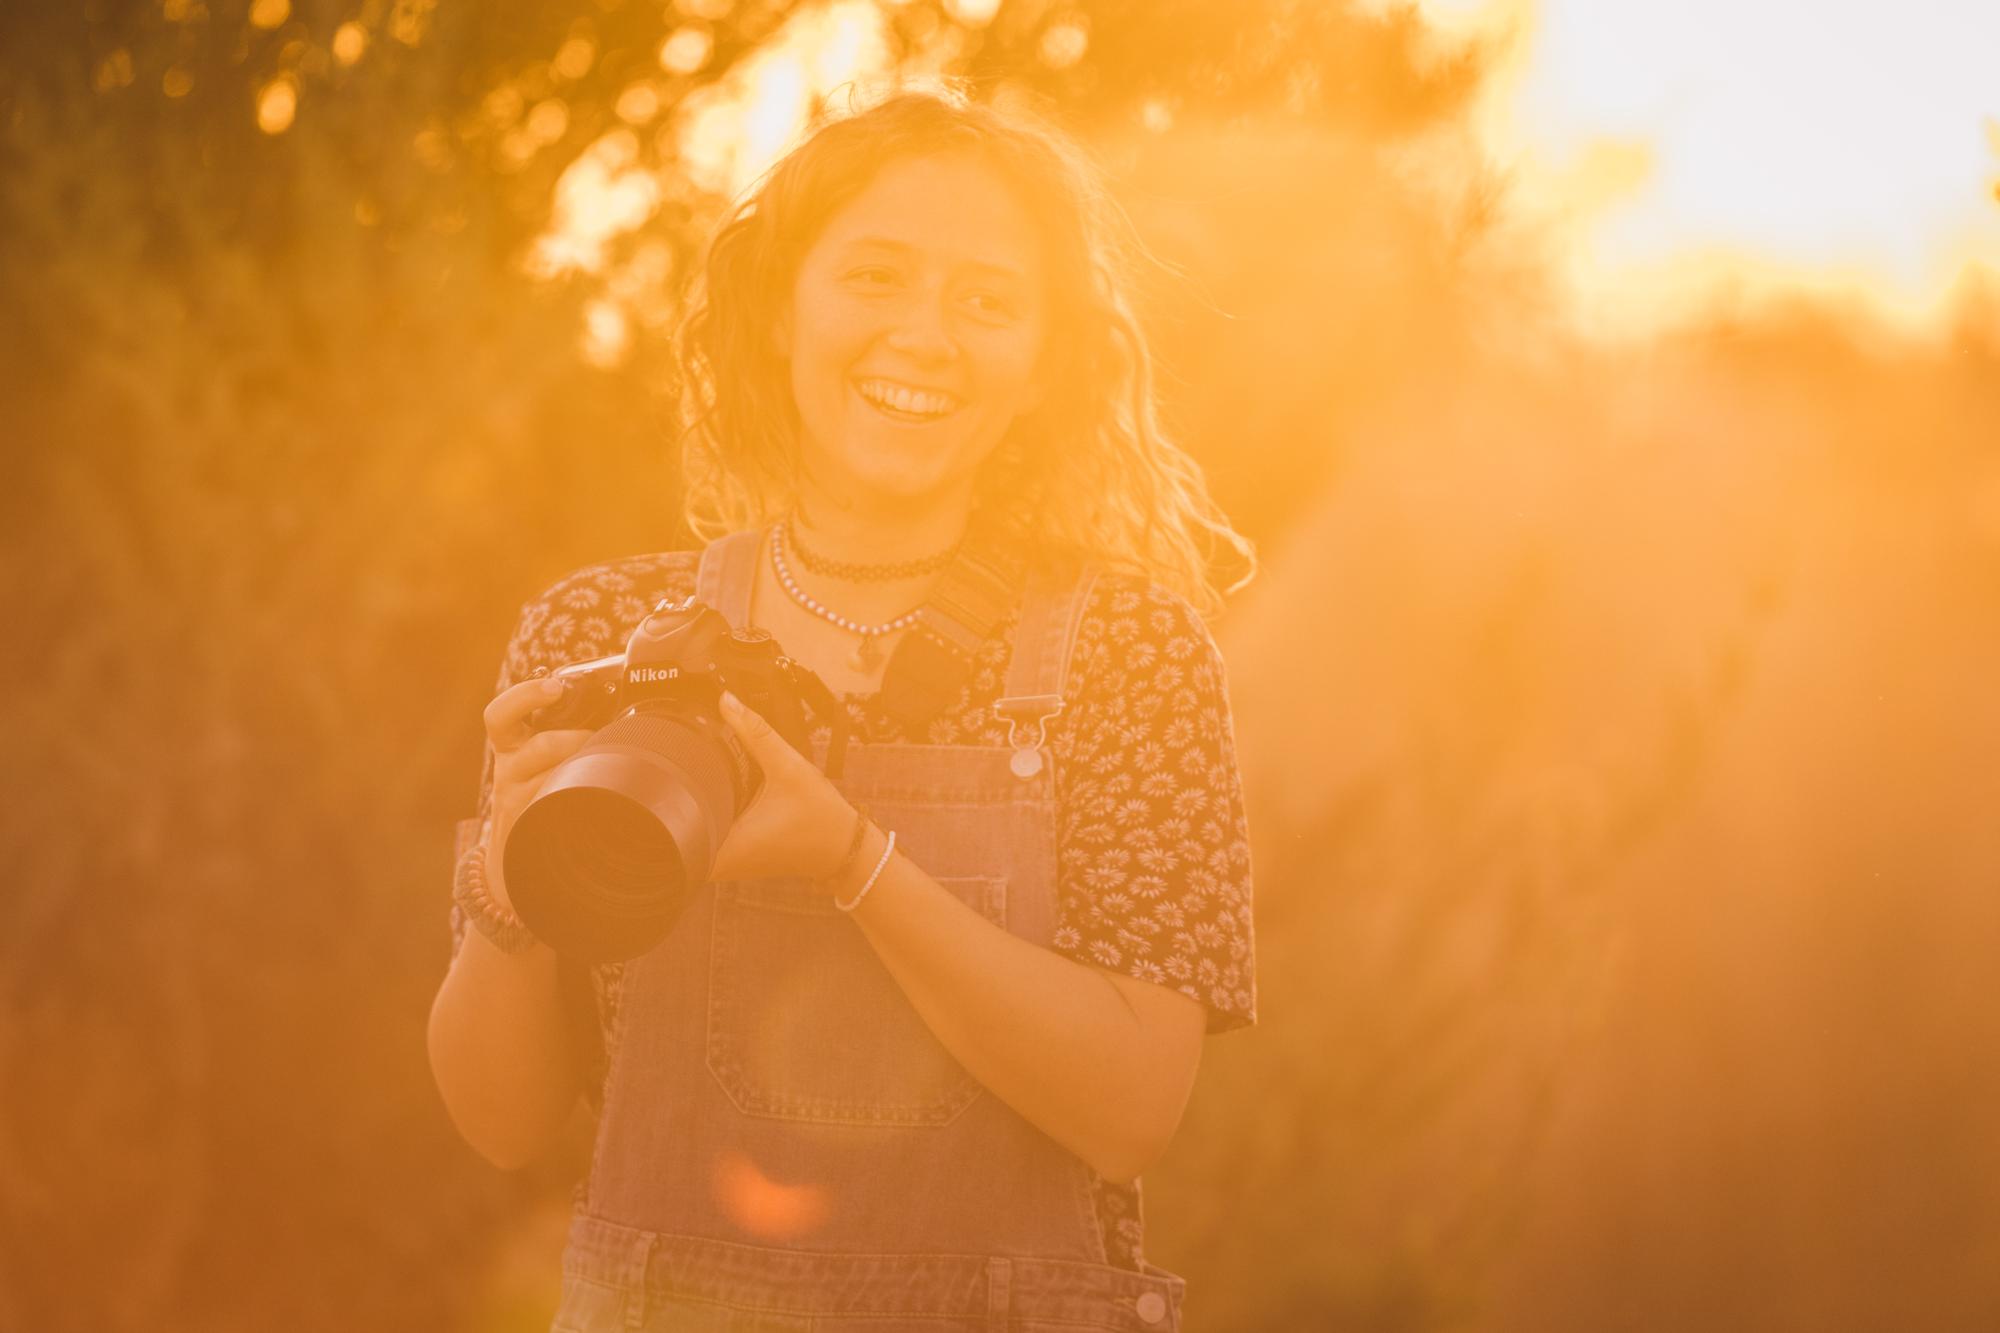 Portrait der Tierfotografin Julie Moquet mit lockigem schulterlangem Haar und ihrer Kamera in der Hand im Sonnenuntergang.